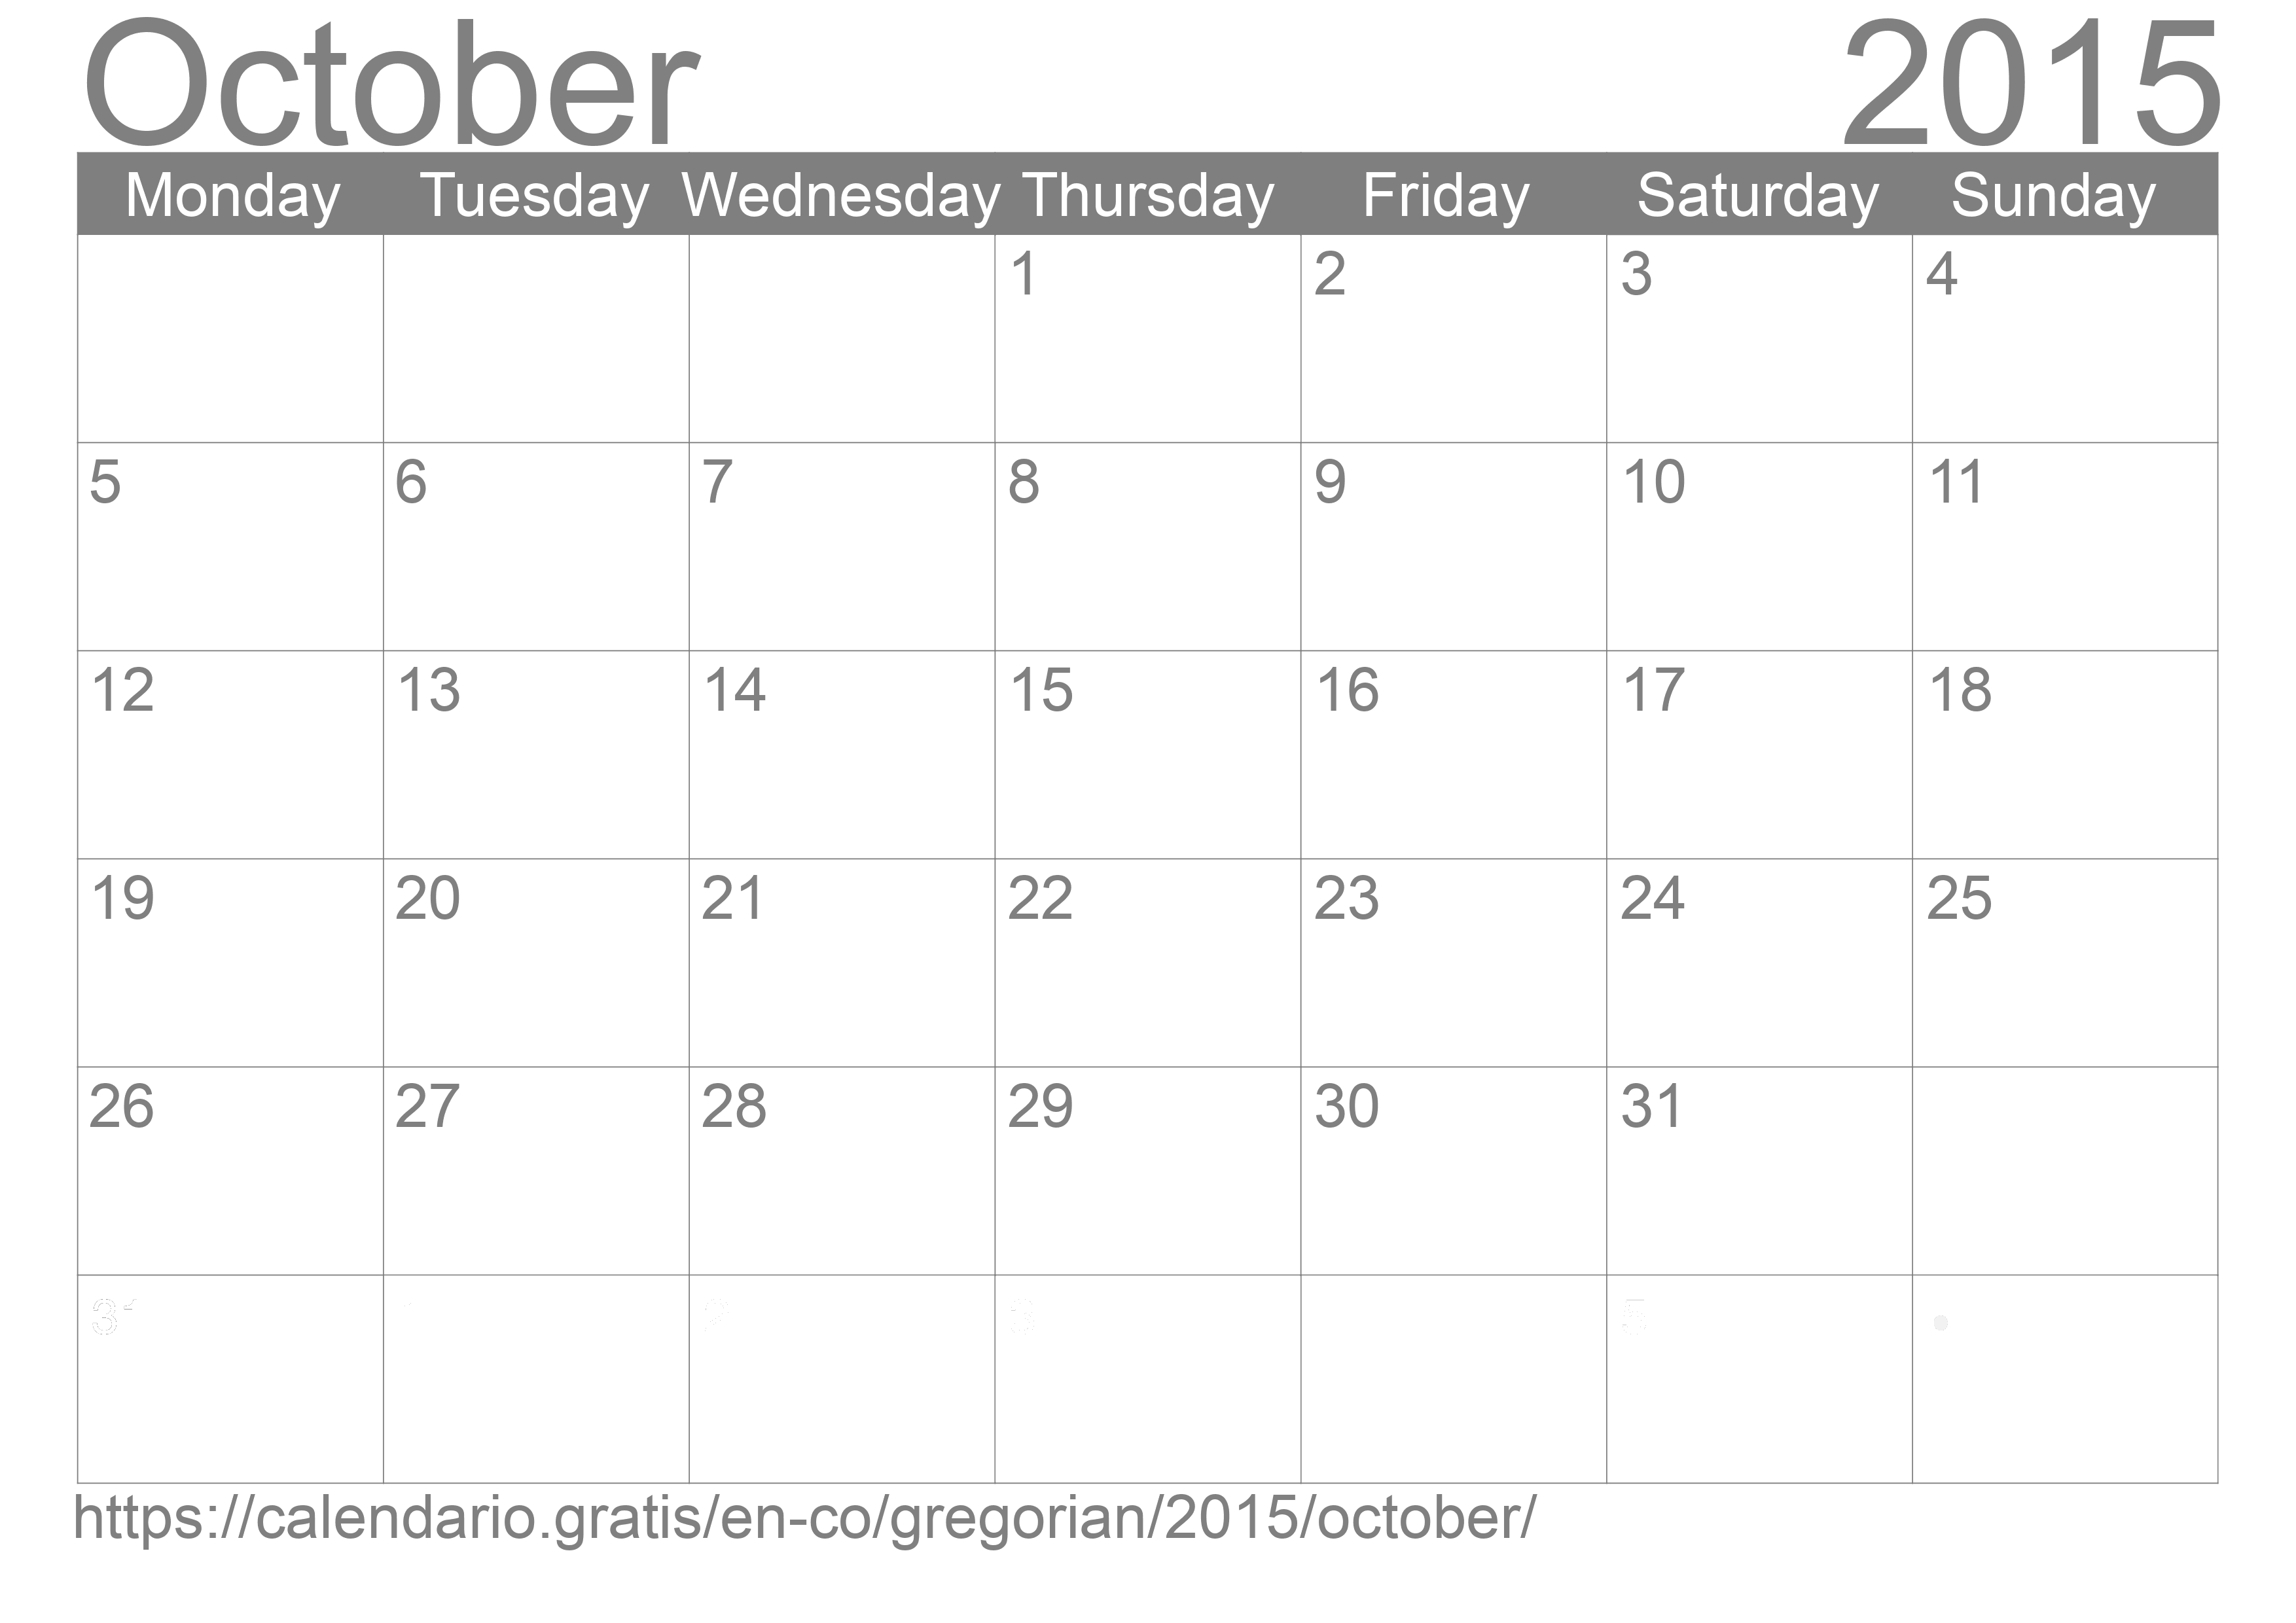 Calendar October 2015 to print